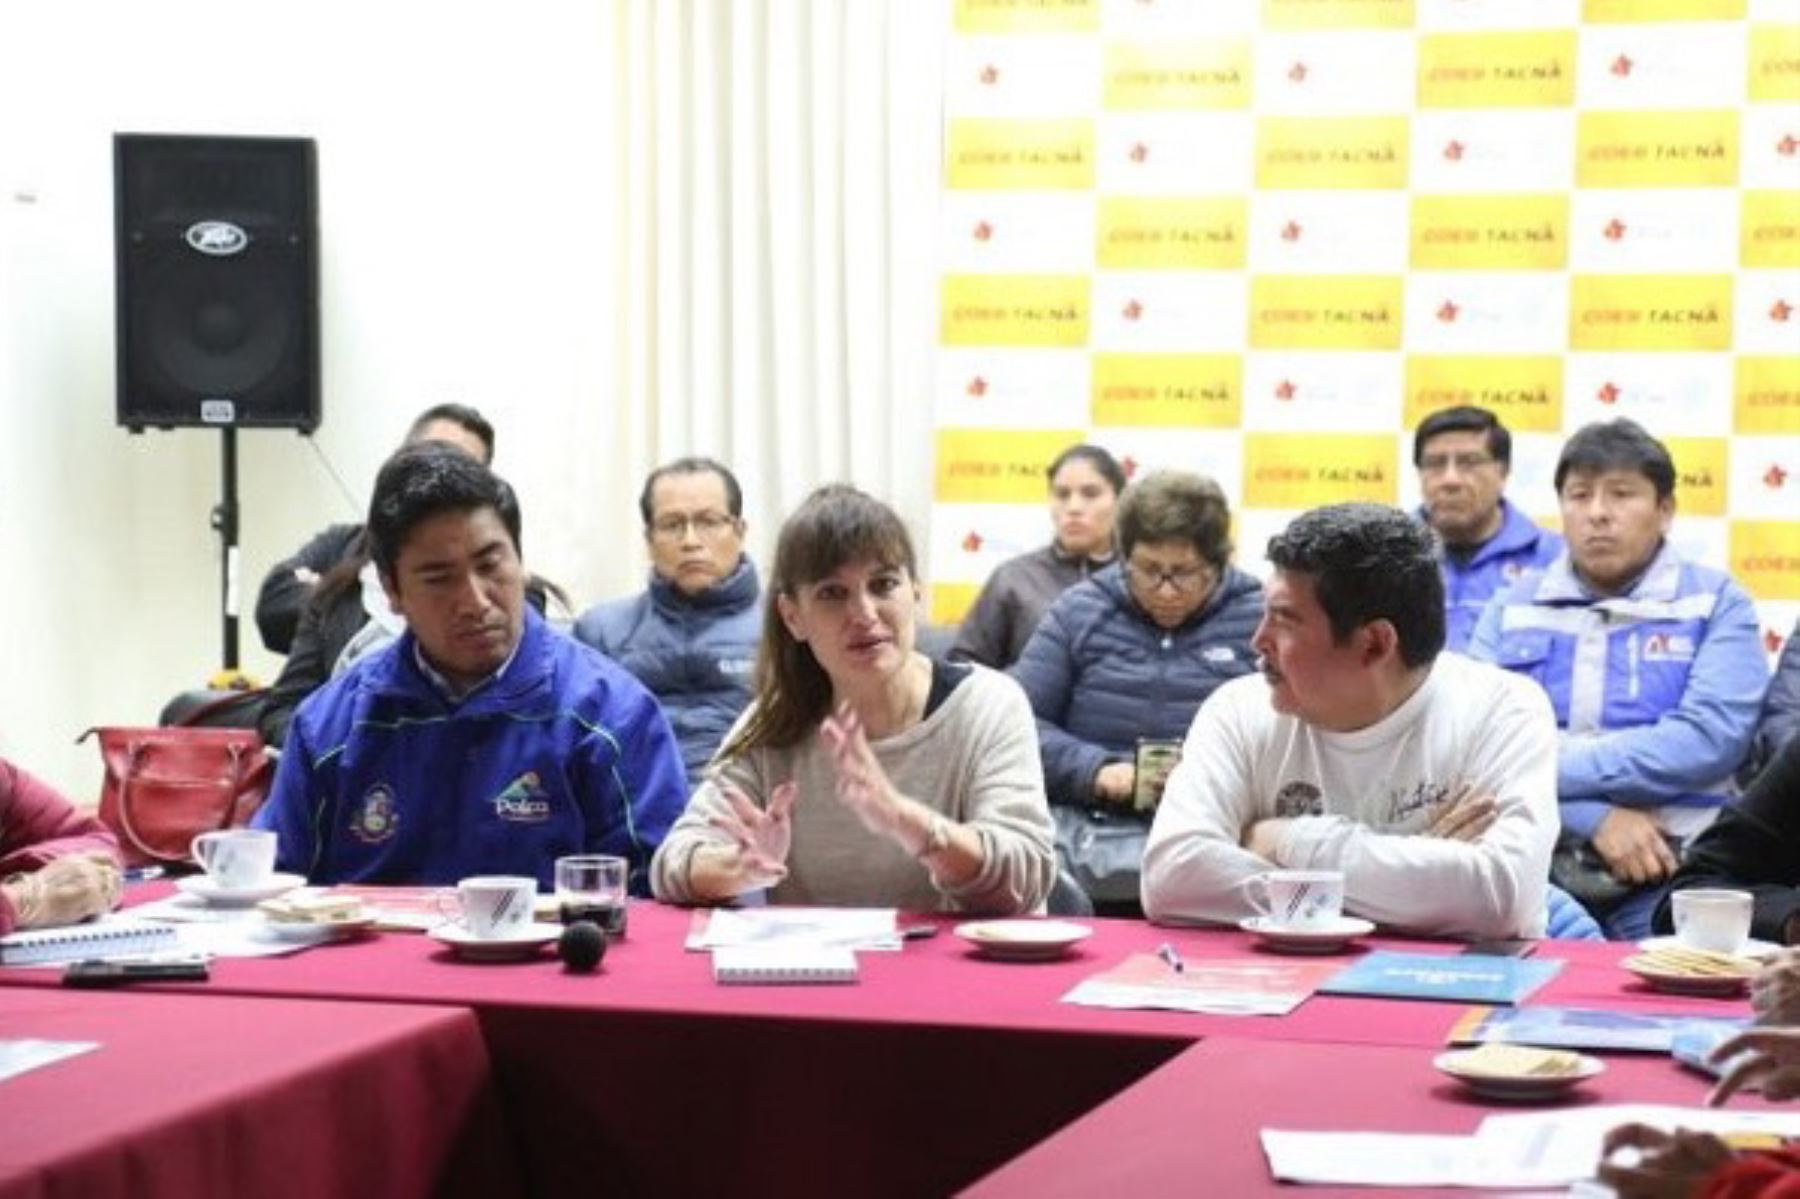 La ministra de Salud, Silvia Pessah Eljay, se reunió con autoridades de la región Tacna, en representación del Presidente de la República, para evaluar la situación de los servicios públicos y las acciones desplegadas en el marco del Plan Multisectorial ante Heladas y Friaje 2018.